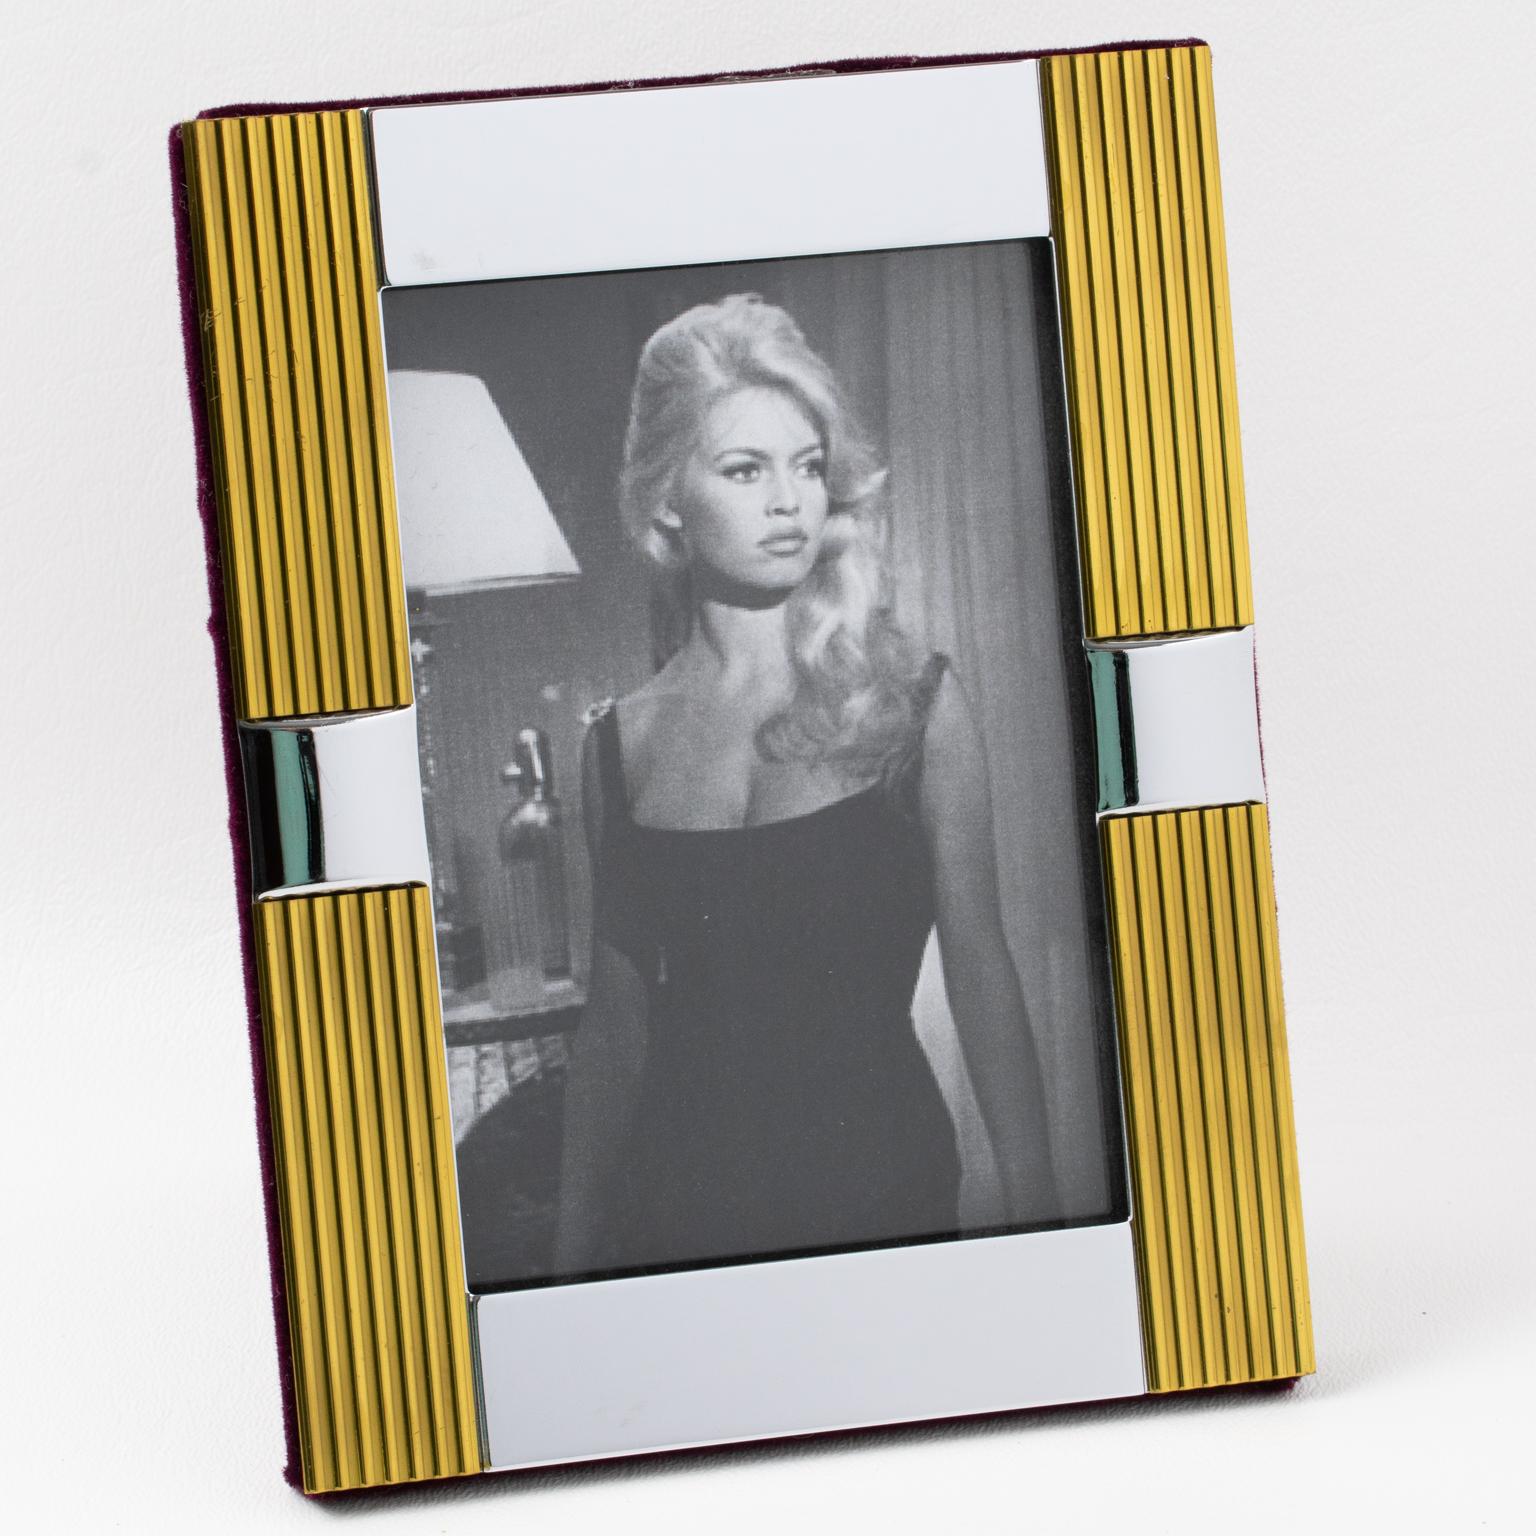 Die italienische Firma Noel BC stellte diesen charmanten italienischen Fotorahmen in den 1970er Jahren her. Das modernistische geometrische Design aus verchromtem und vergoldetem Messing hat ein Streifenmuster. Die Staffelei und die Rückseite sind